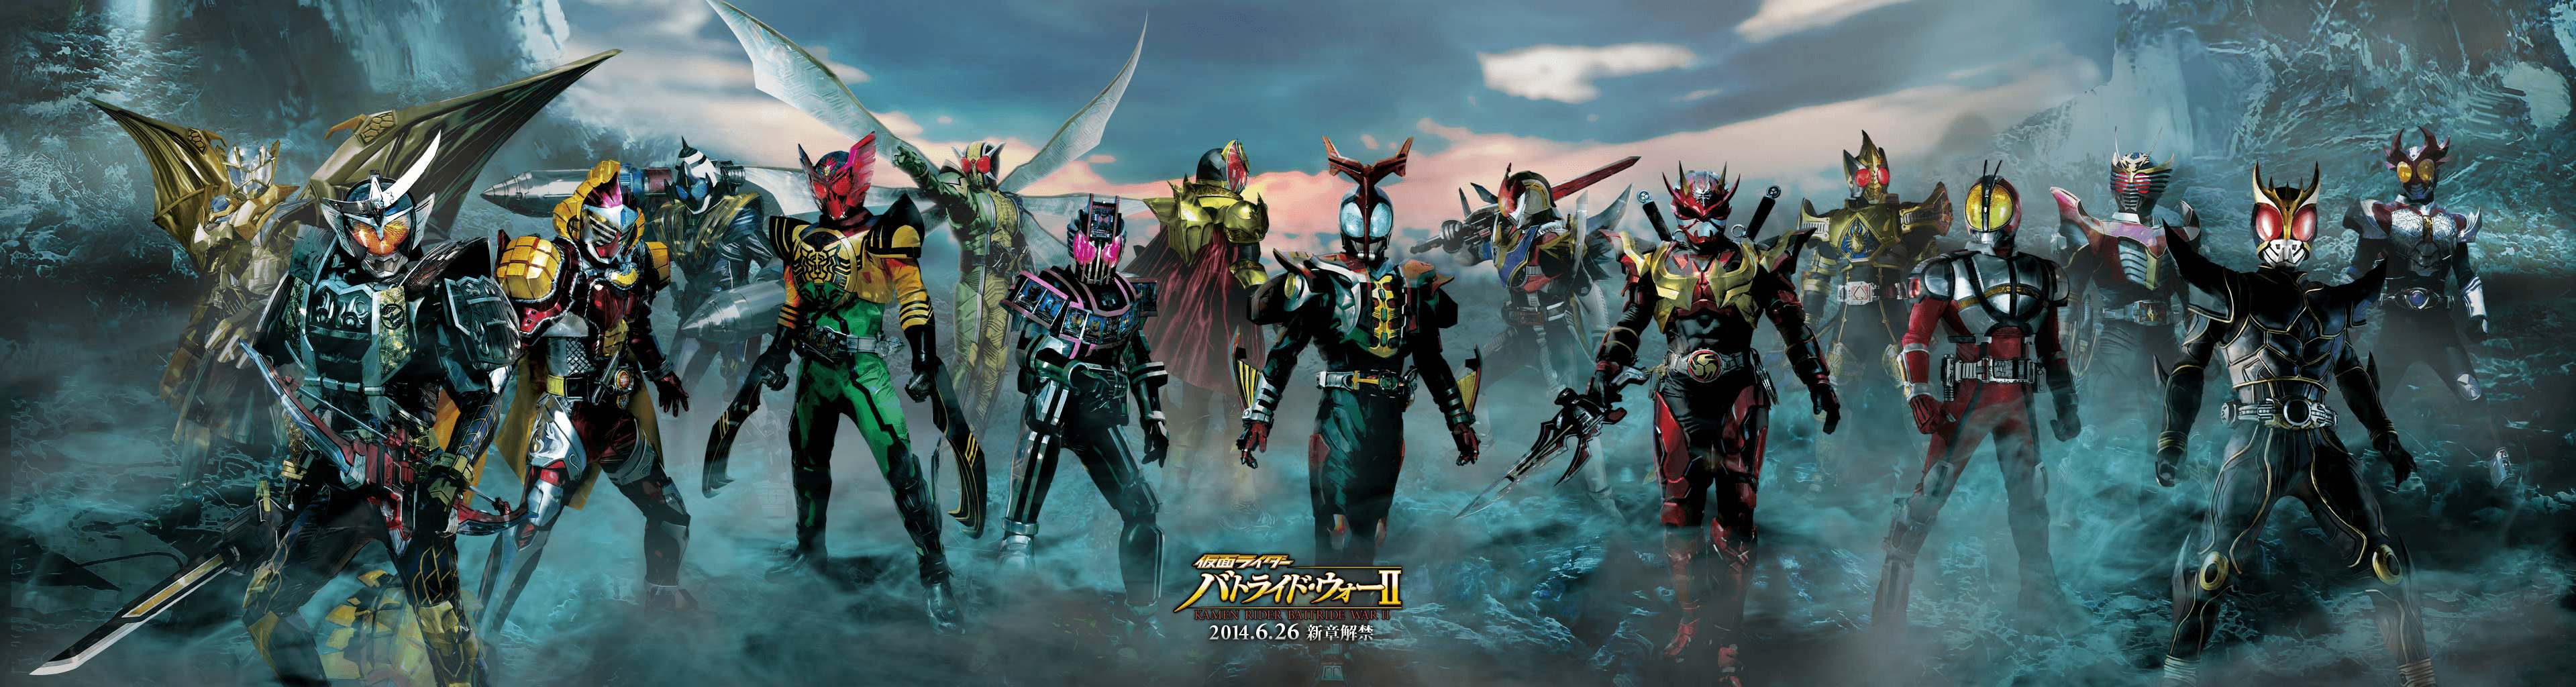 All Kamen Rider Wallpaper